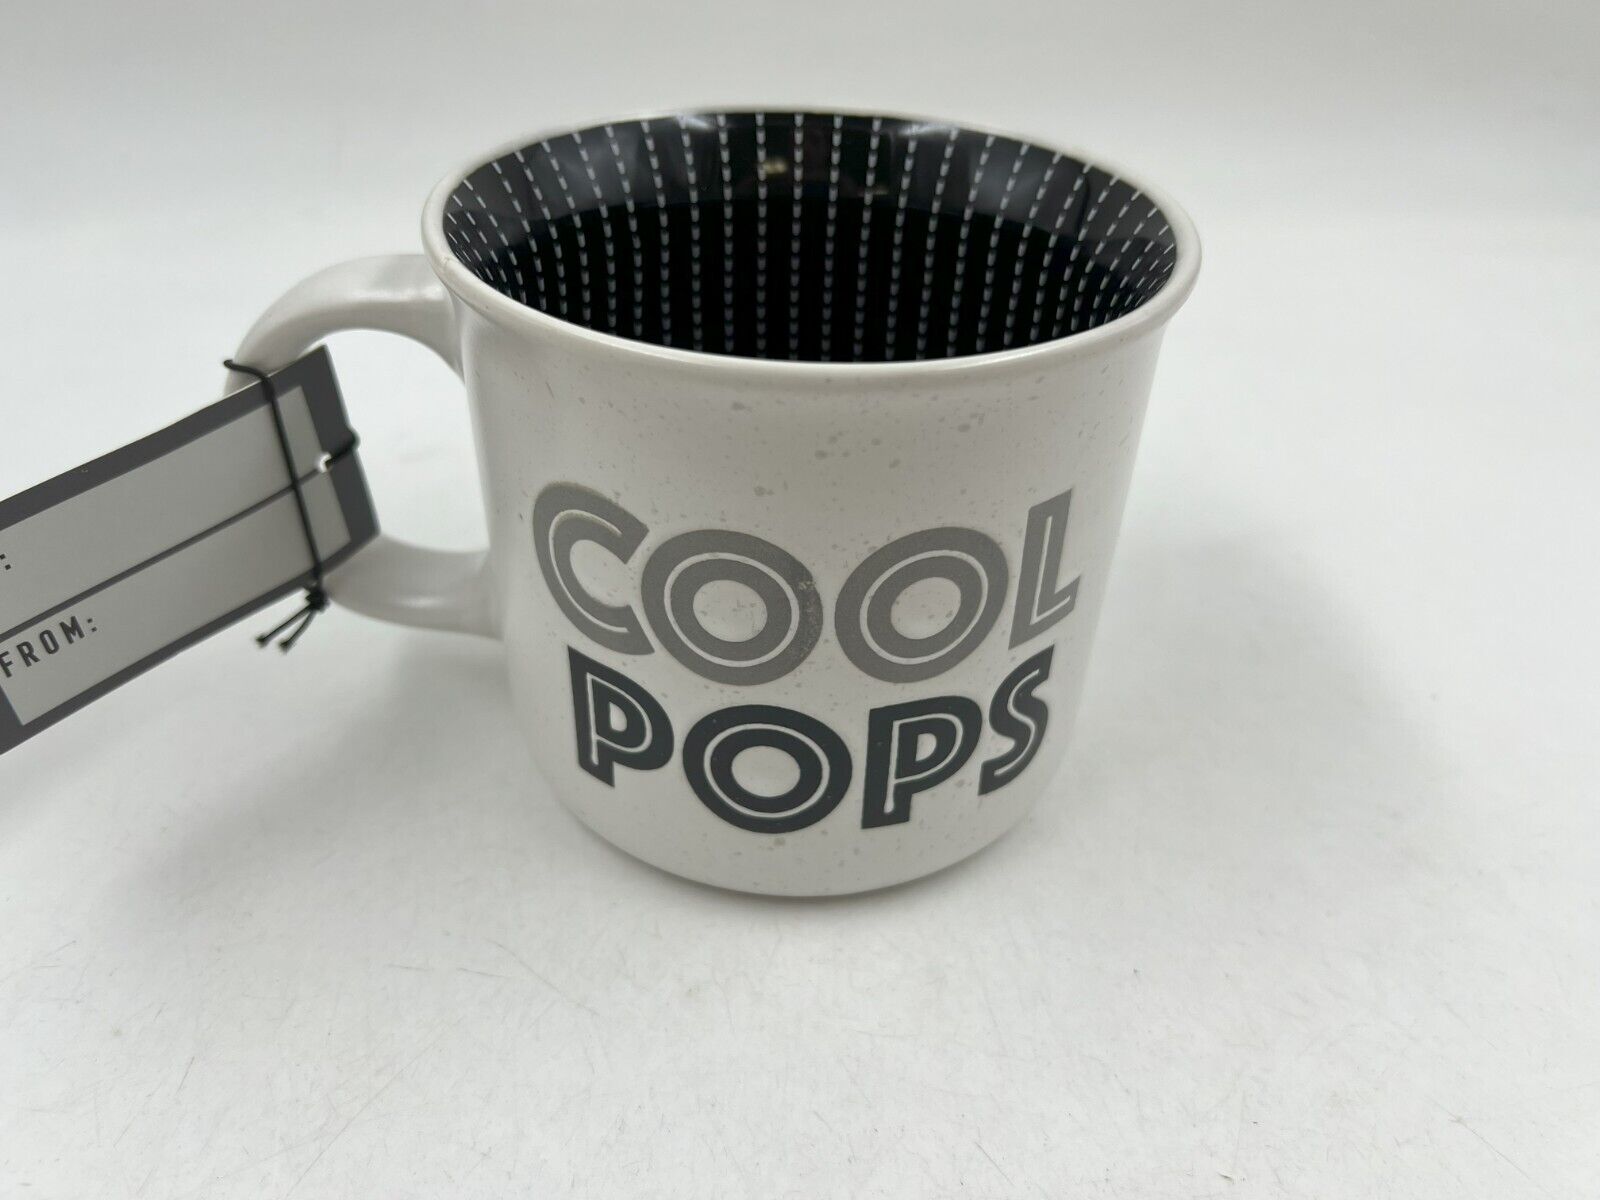 Sheffield Home Ceramic 20oz Cool Pops Coffee Mug CC02B51023